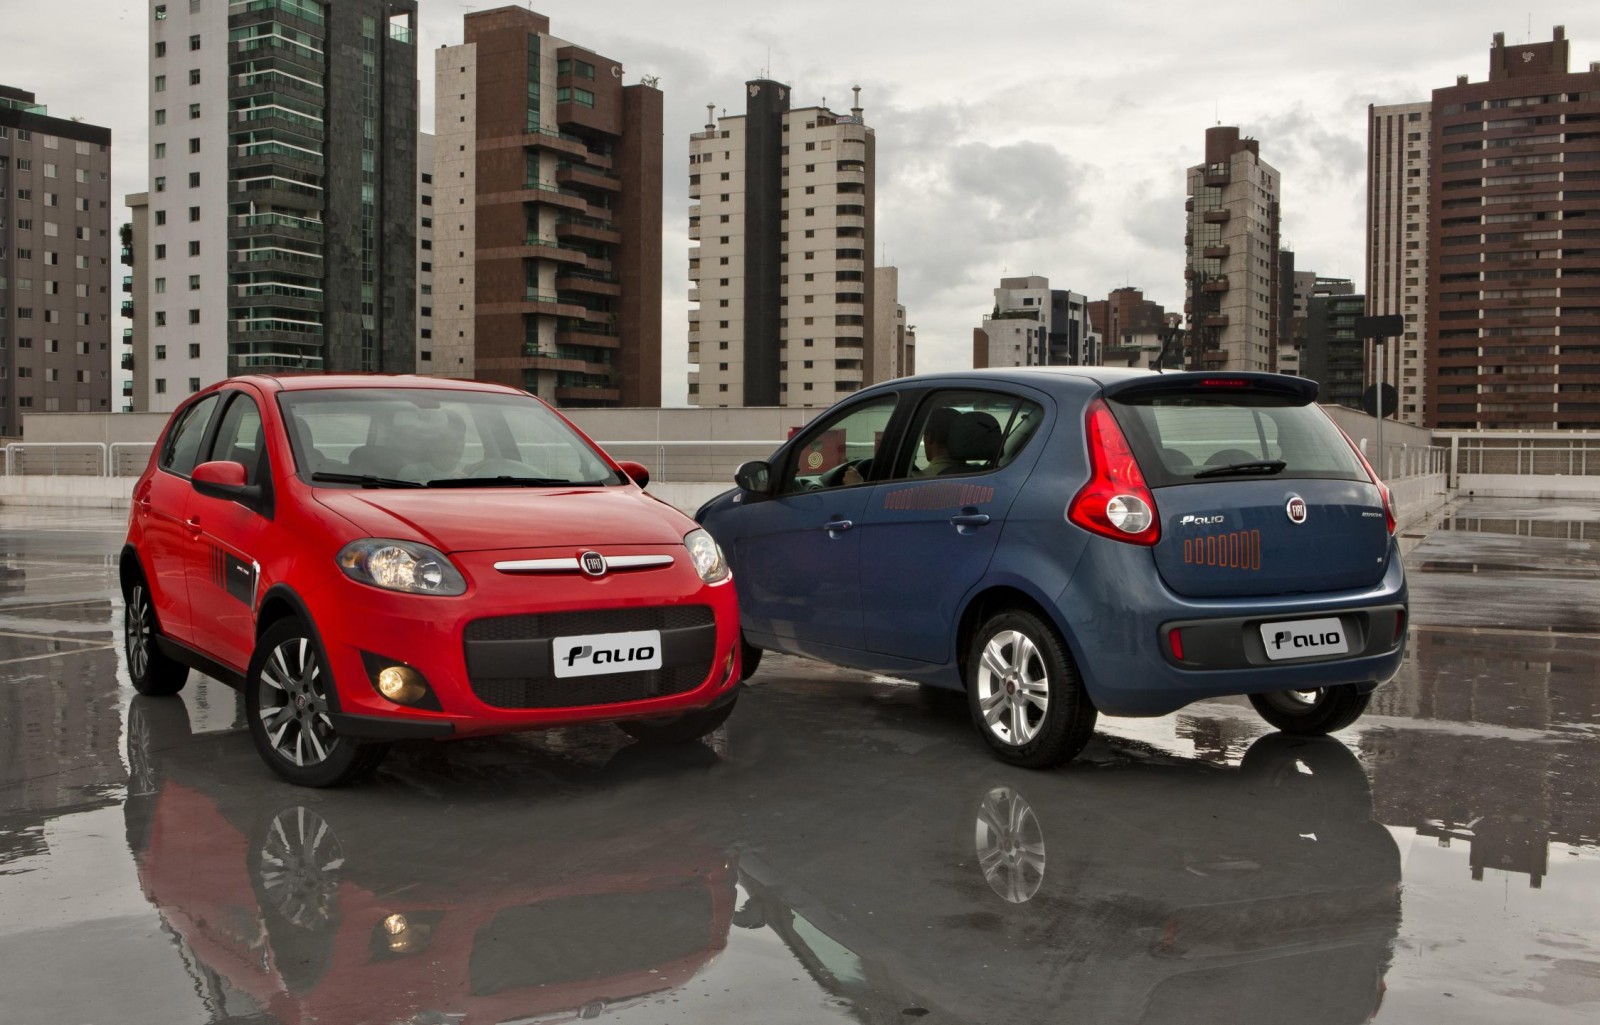 Na Argentina, jovens preferem VW e mais velhos, Toyota - Revista Carro